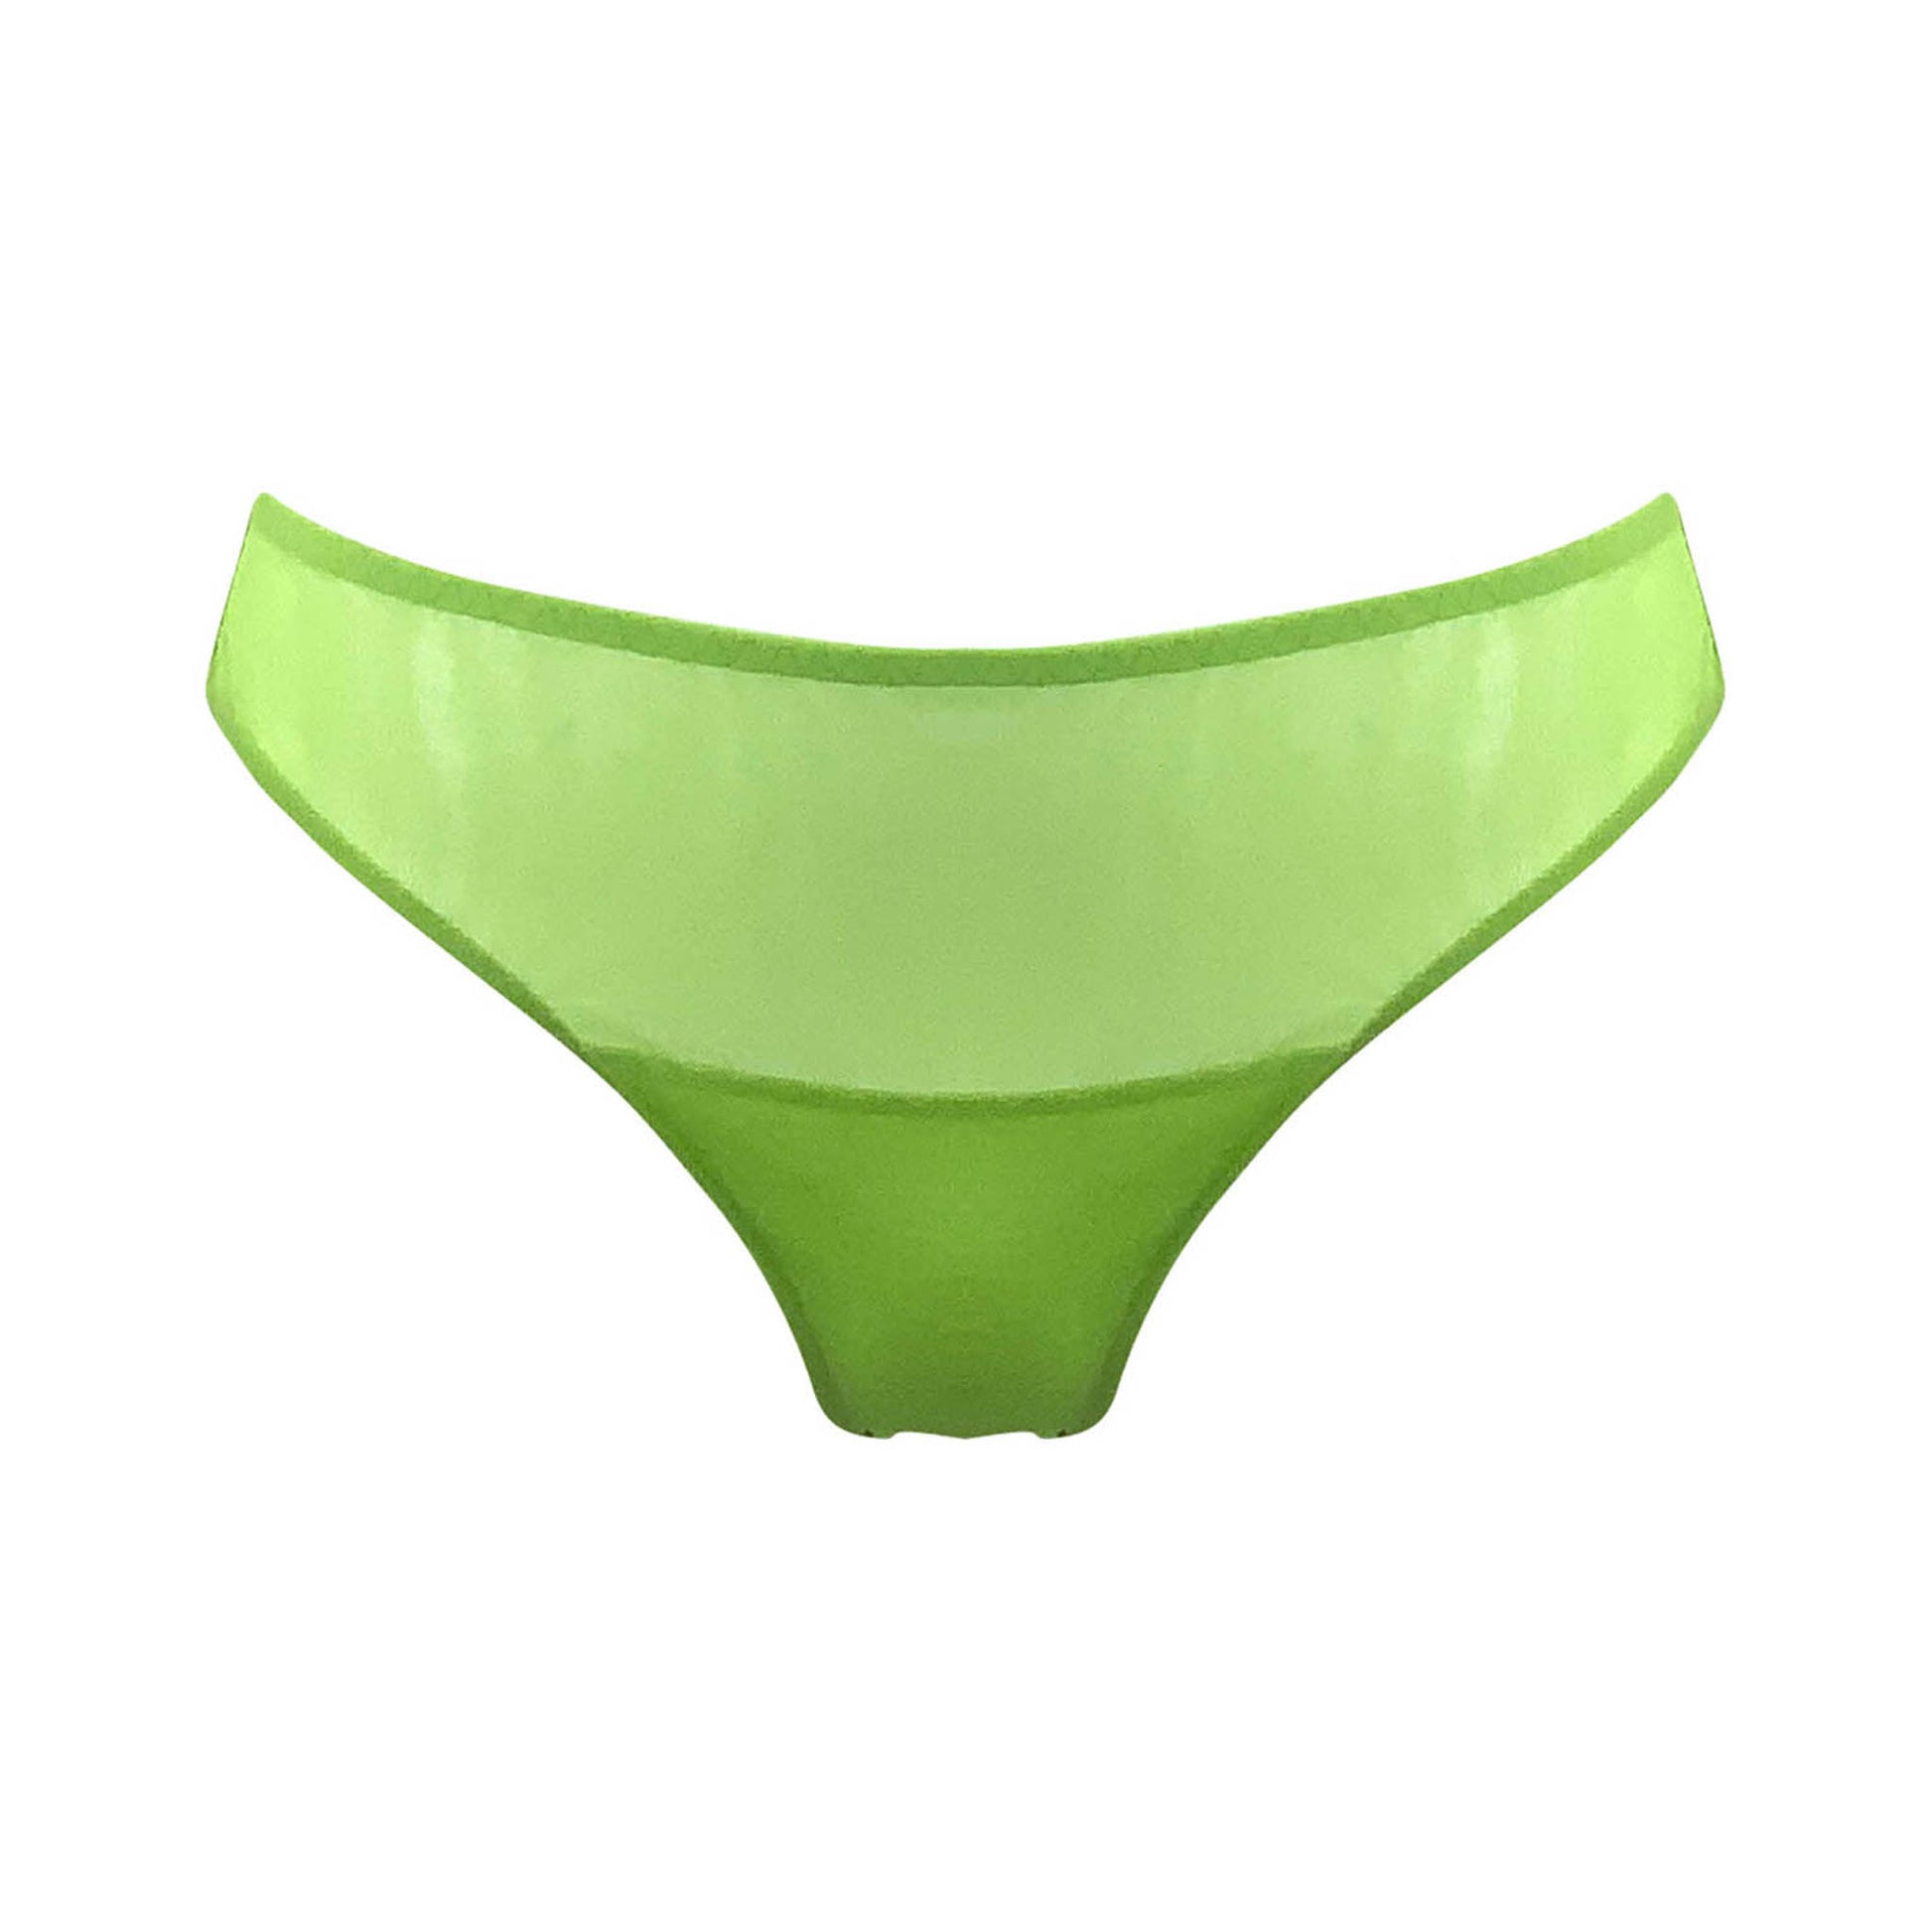 Nokaya green tulle bikini. Front look